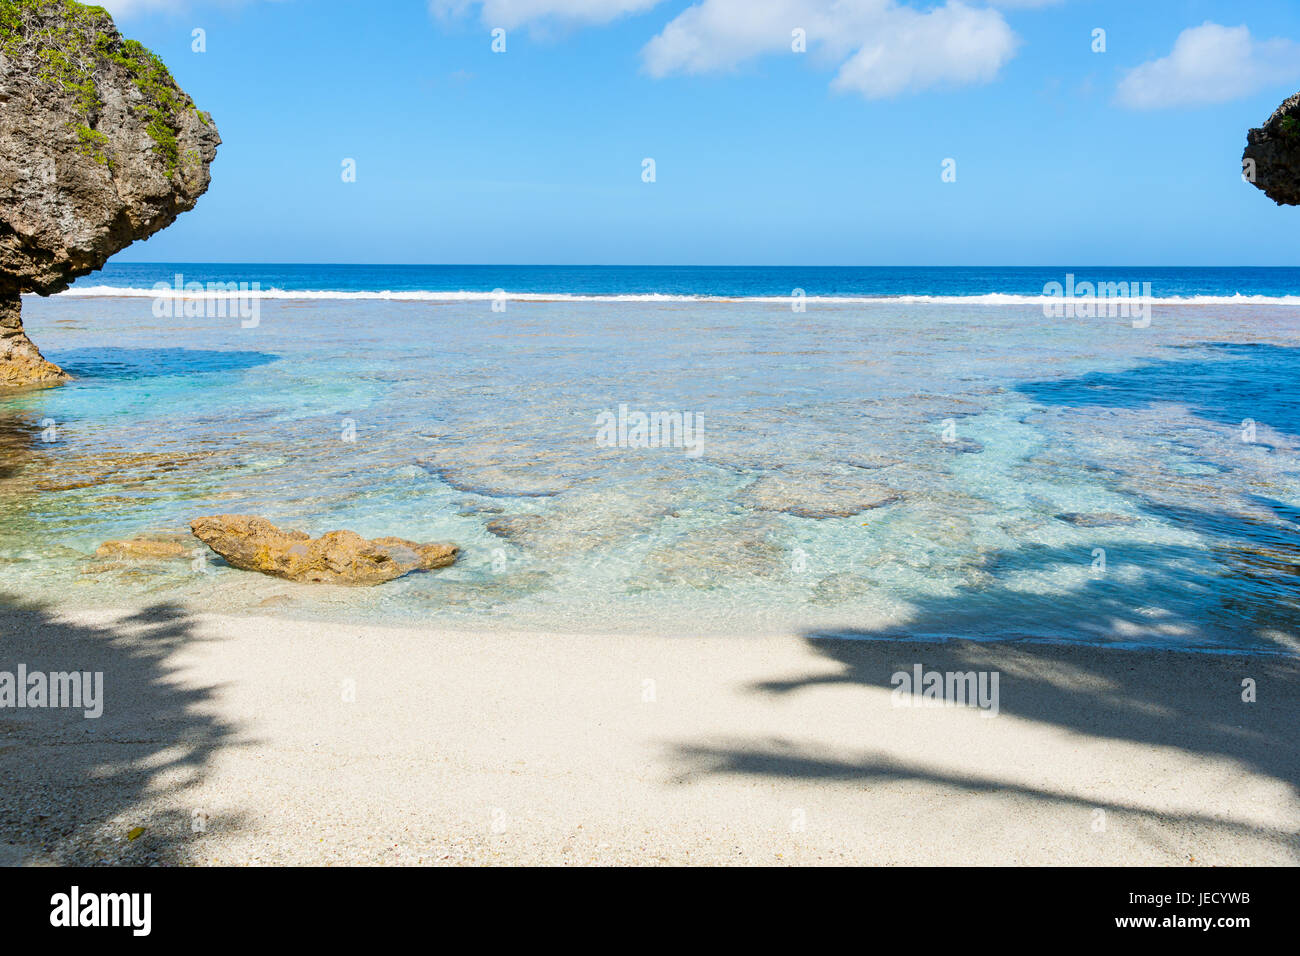 Tropischen Mustern und Farben von Korallenriff, Meer und Himmel vom Islated Strand eingerahmt von Schatten und Rock Küsten Funktionen Stockfoto